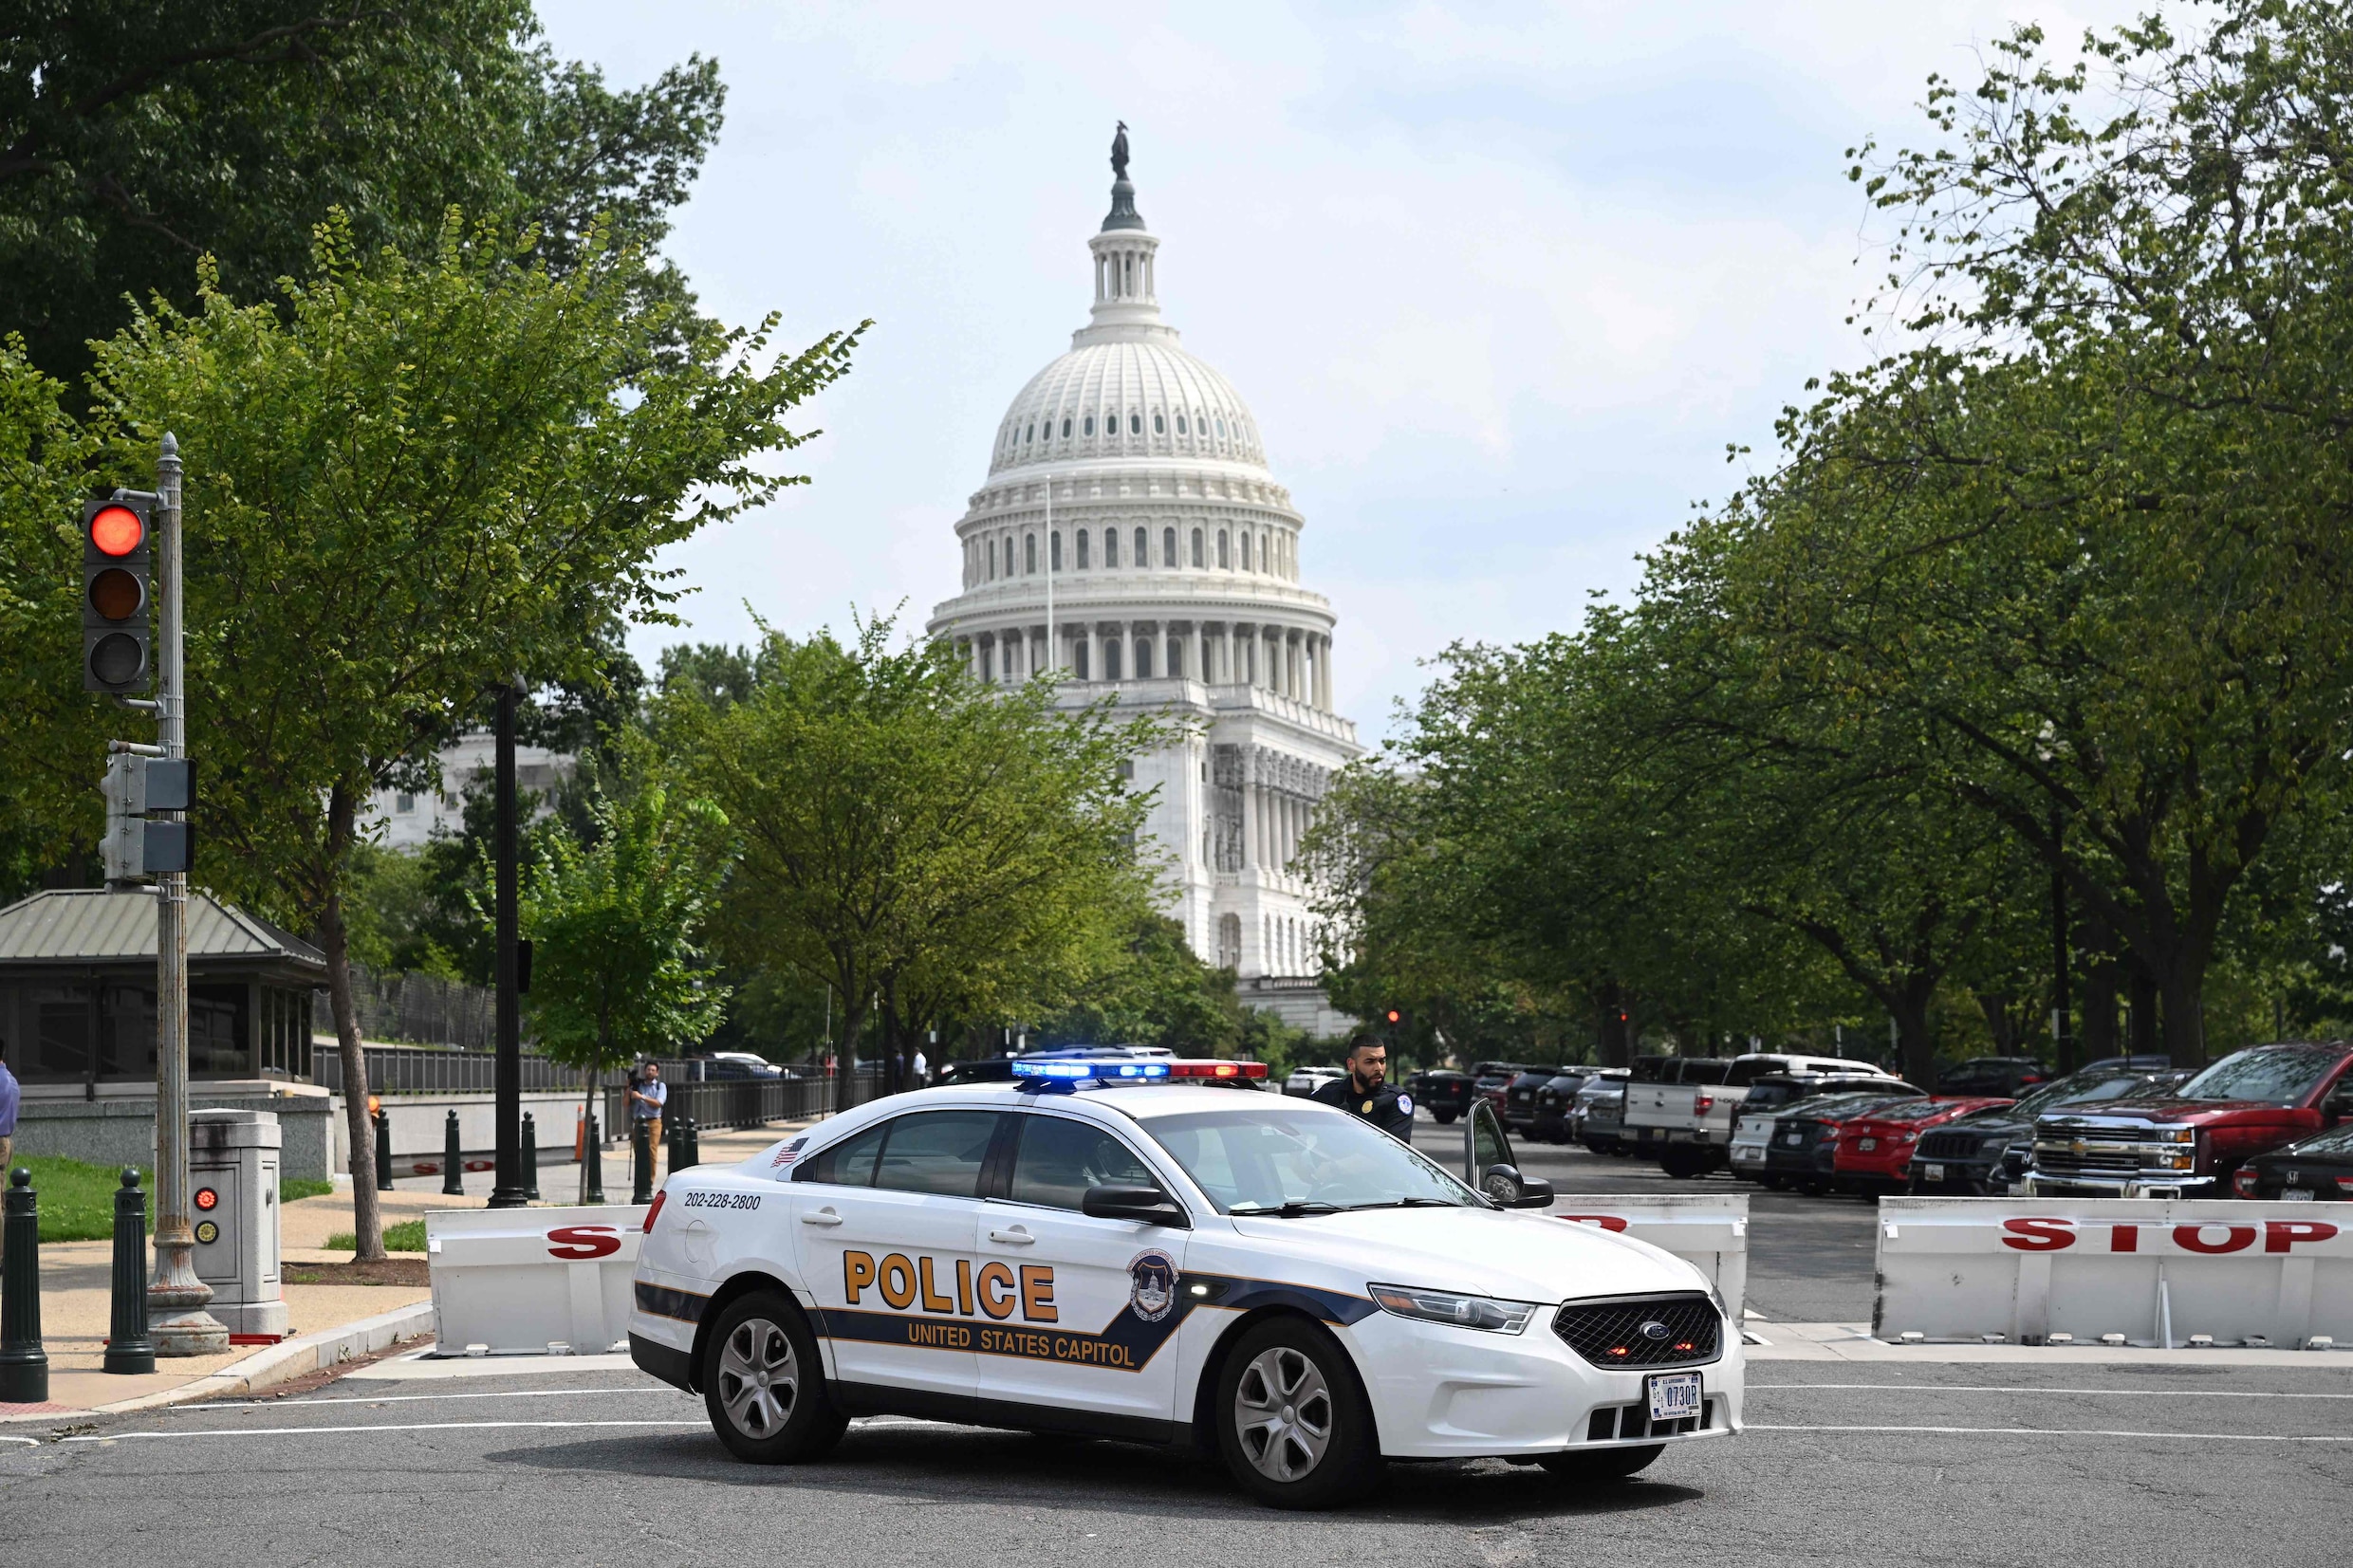 Politie massaal aanwezig in Amerikaanse Senaat na melding van schutter, noodoproep blijkt vals alarm